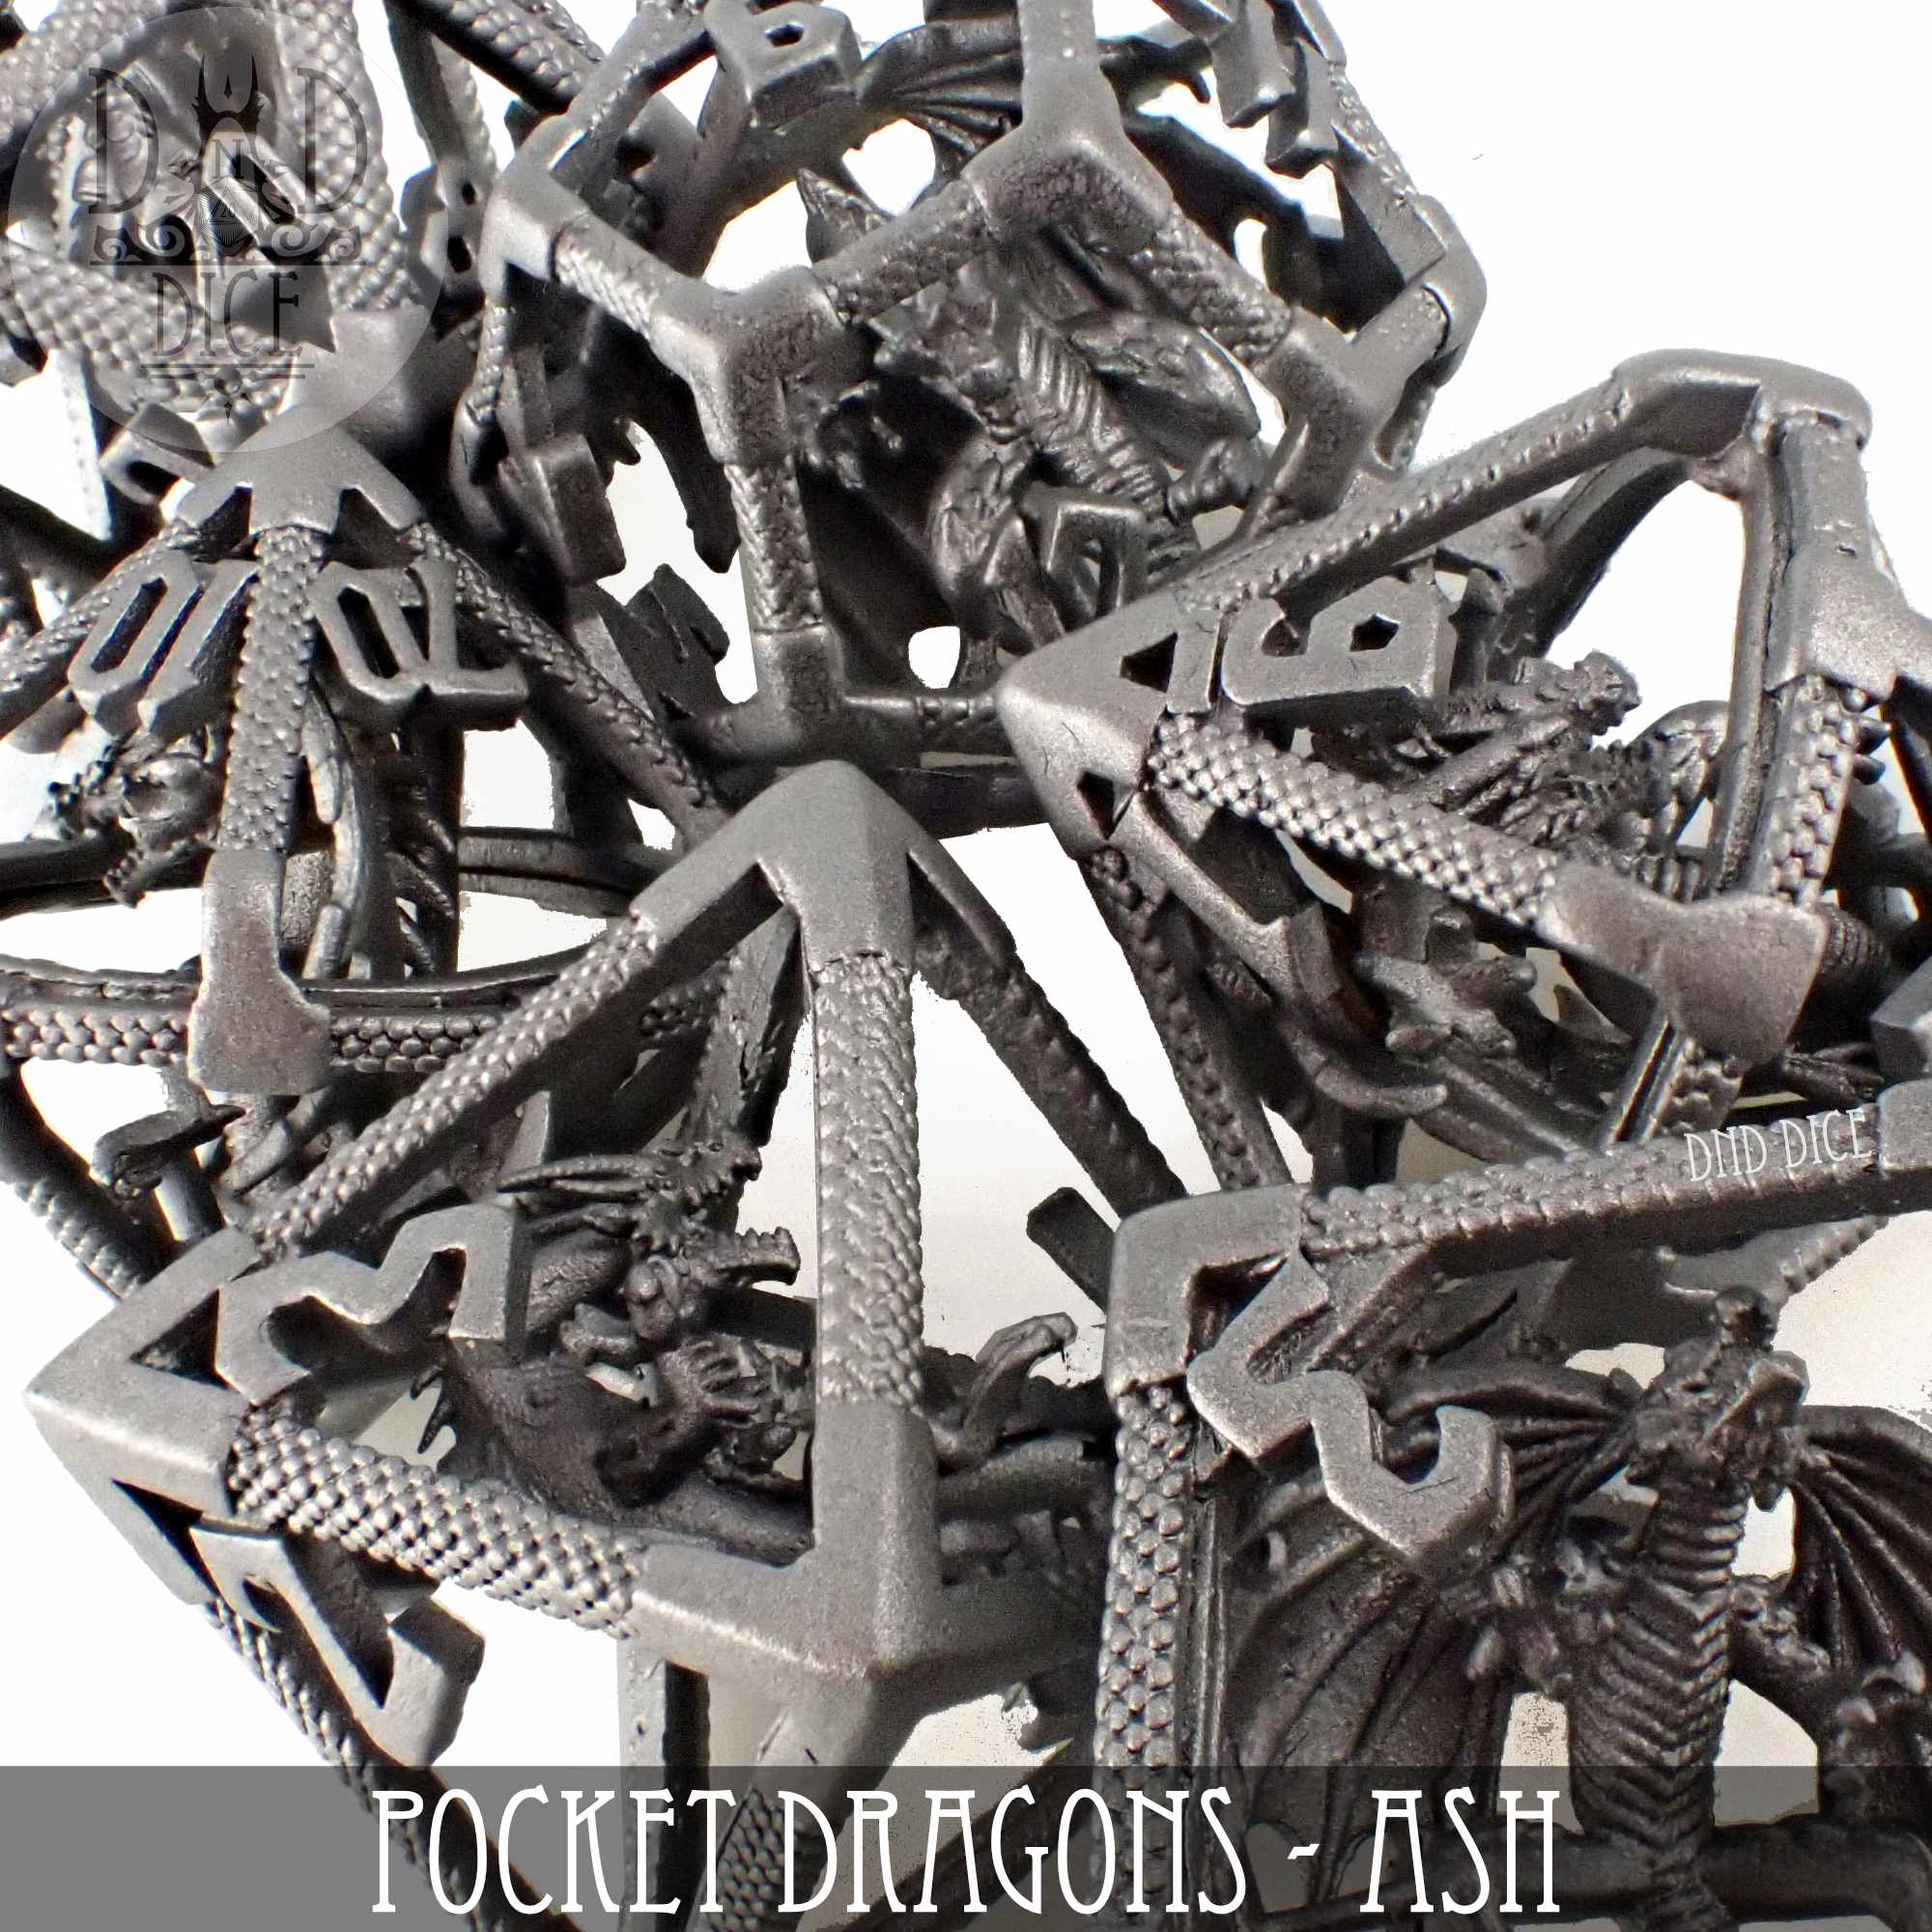 Pocket Dragons - Ash Metal Dice Set (Gift Box)